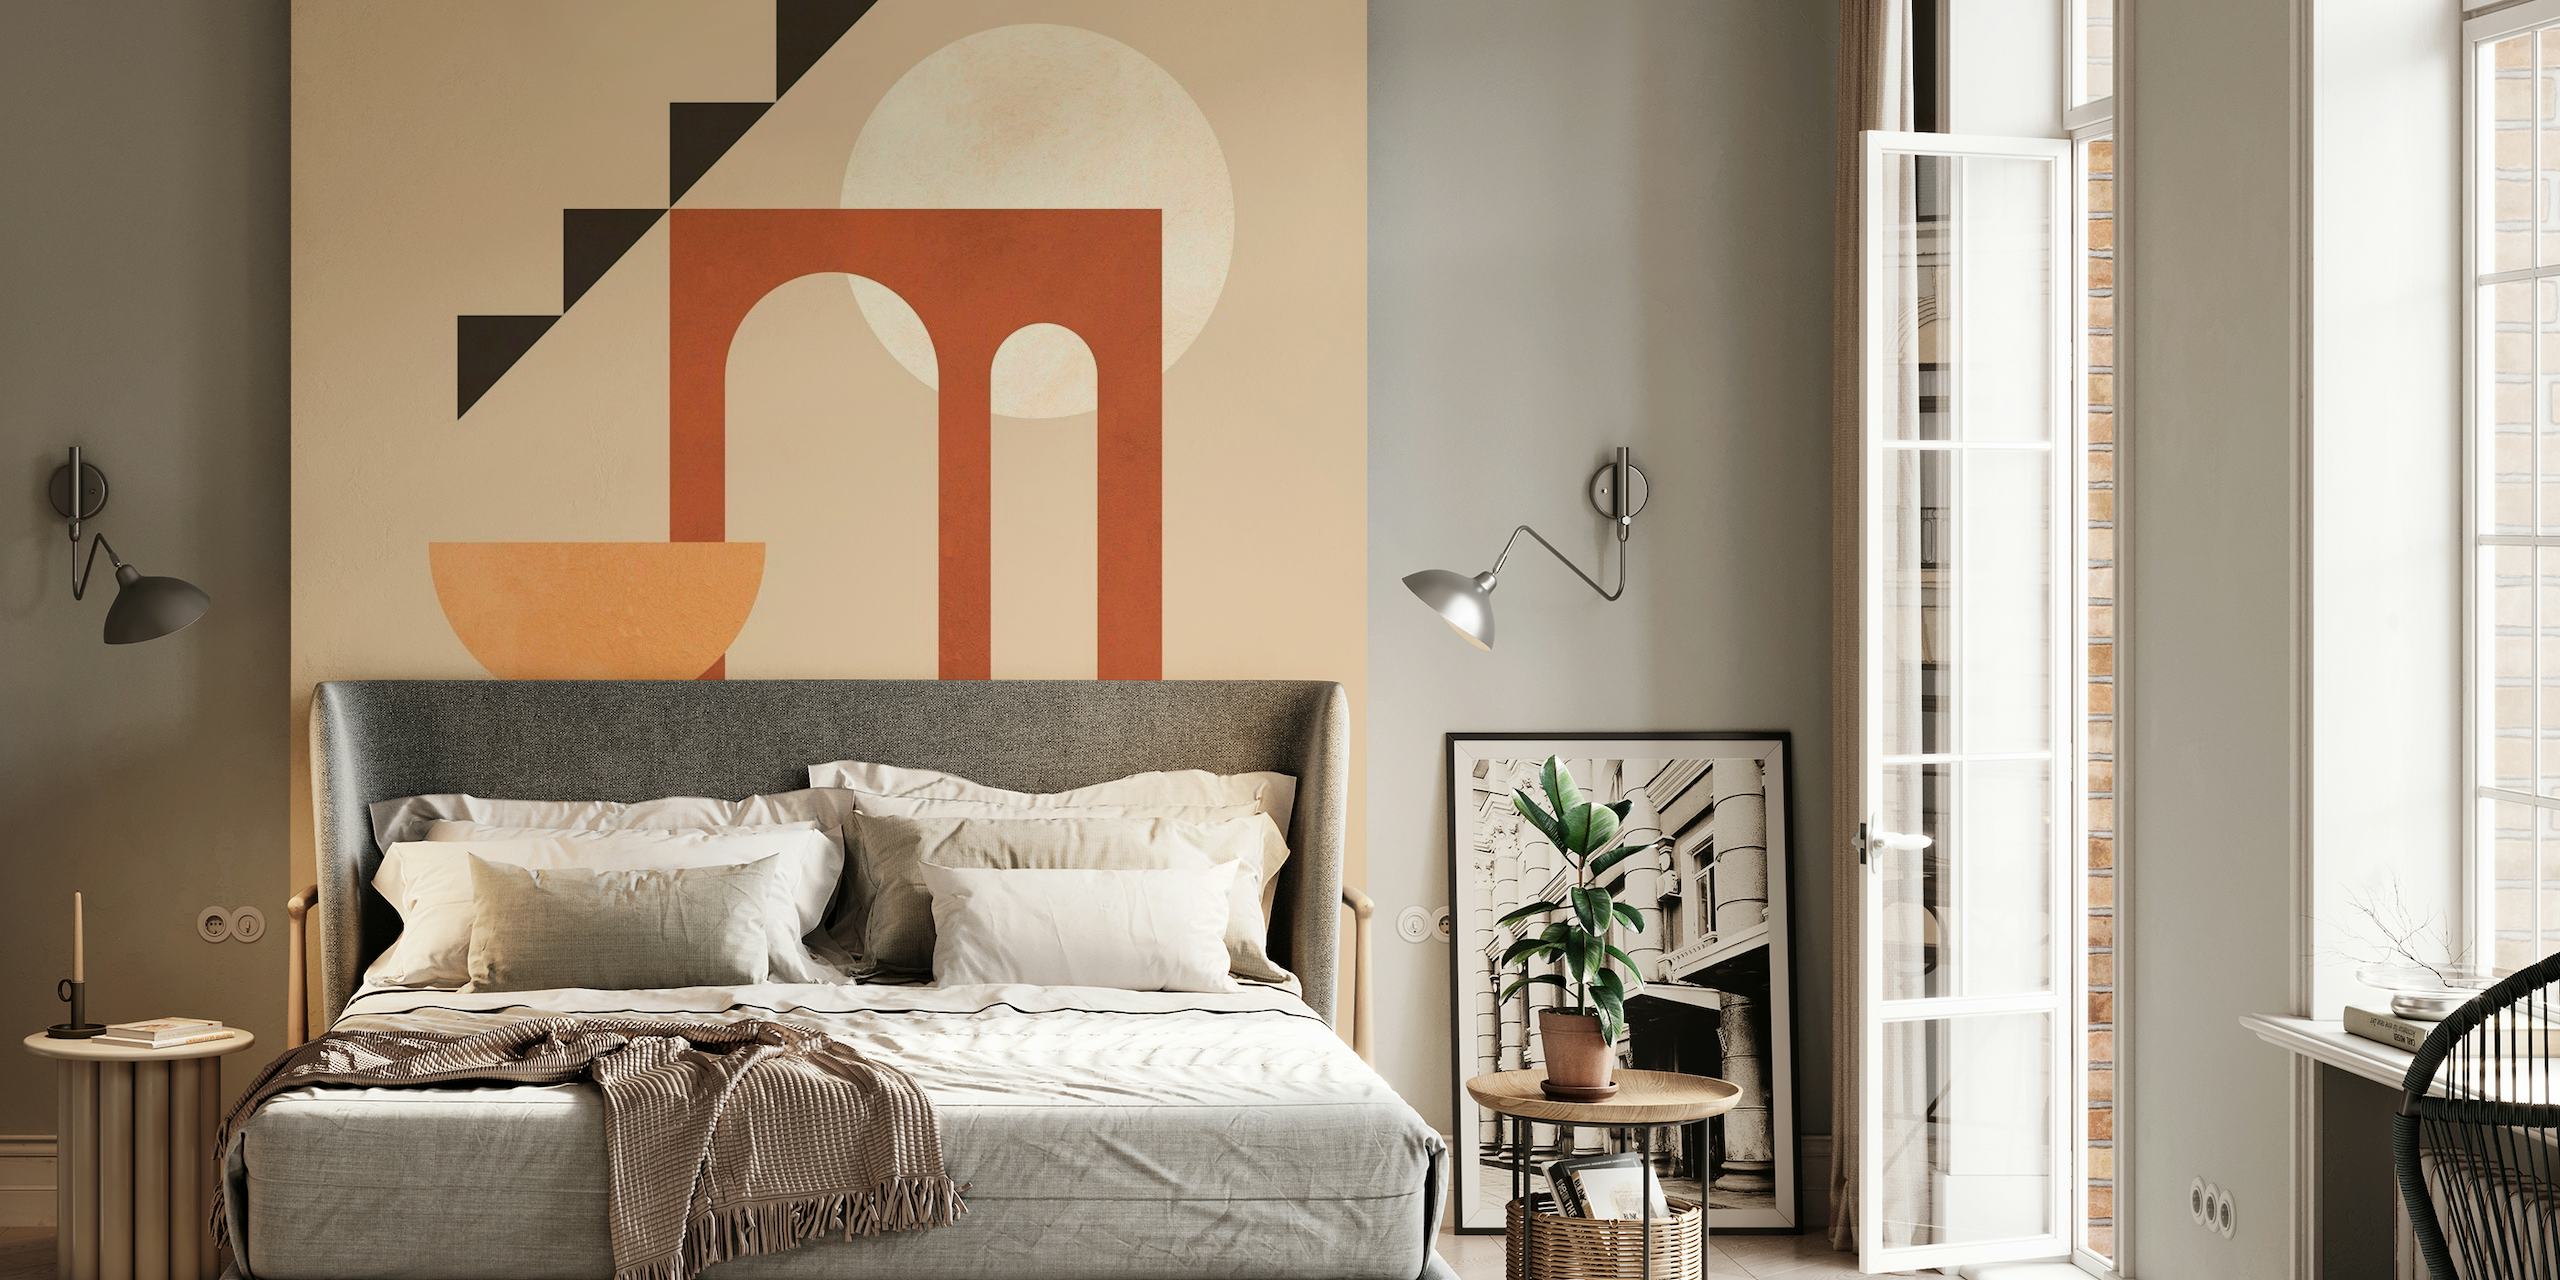 Mural abstrato arquitetônico minimalista com formas geométricas e tons terrosos